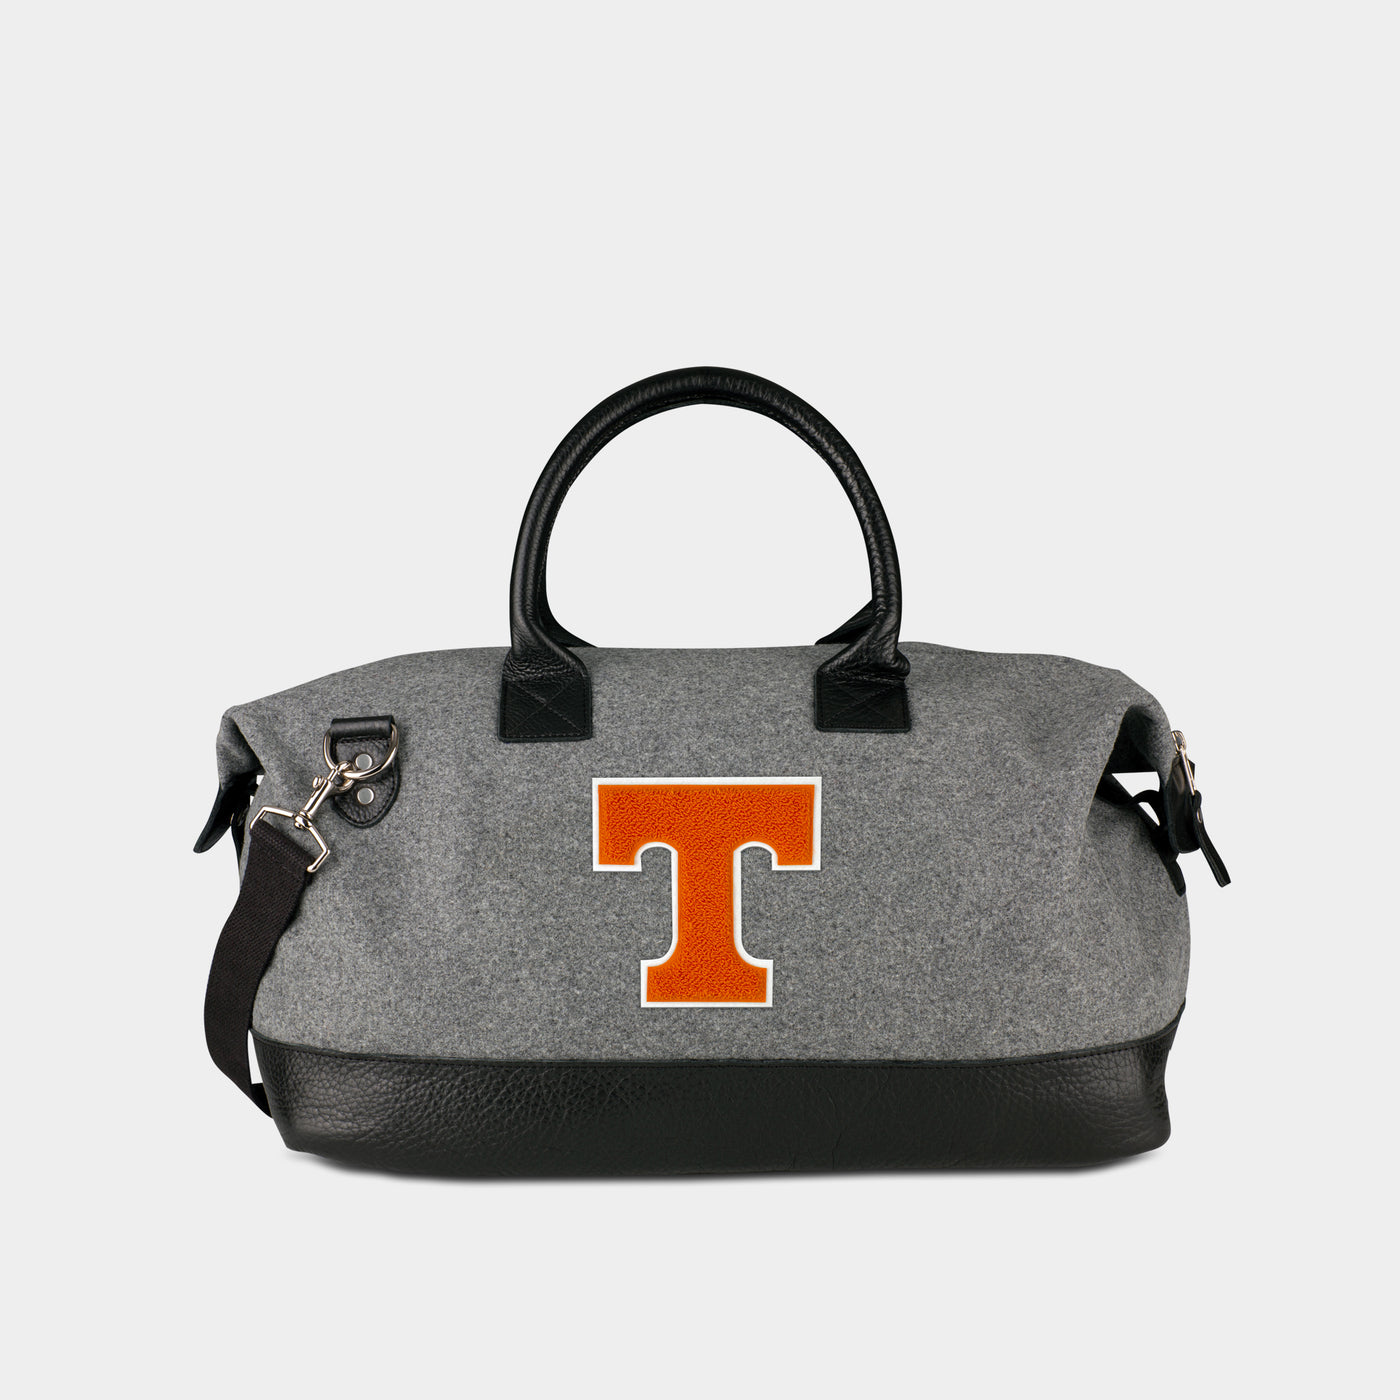 Tennessee Volunteers "T" Weekender Duffle Bag